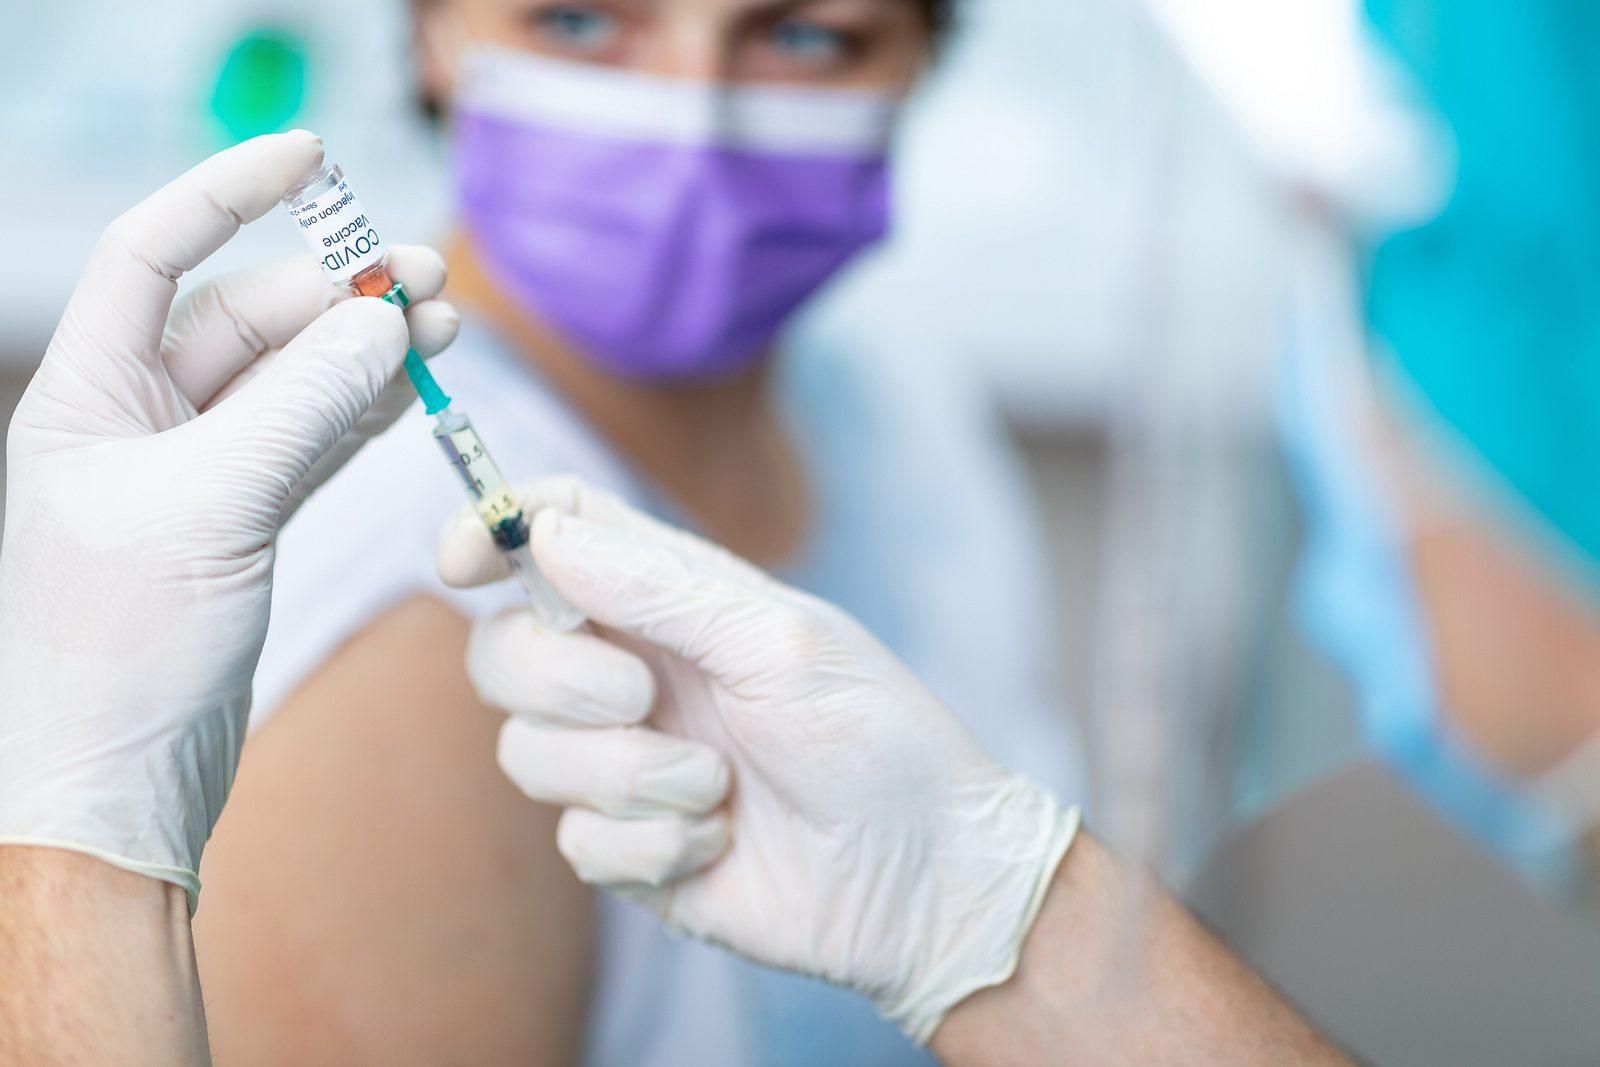 "Очень вероятно": В ЕС отреагировали, на нужность третьей дозы вакцины